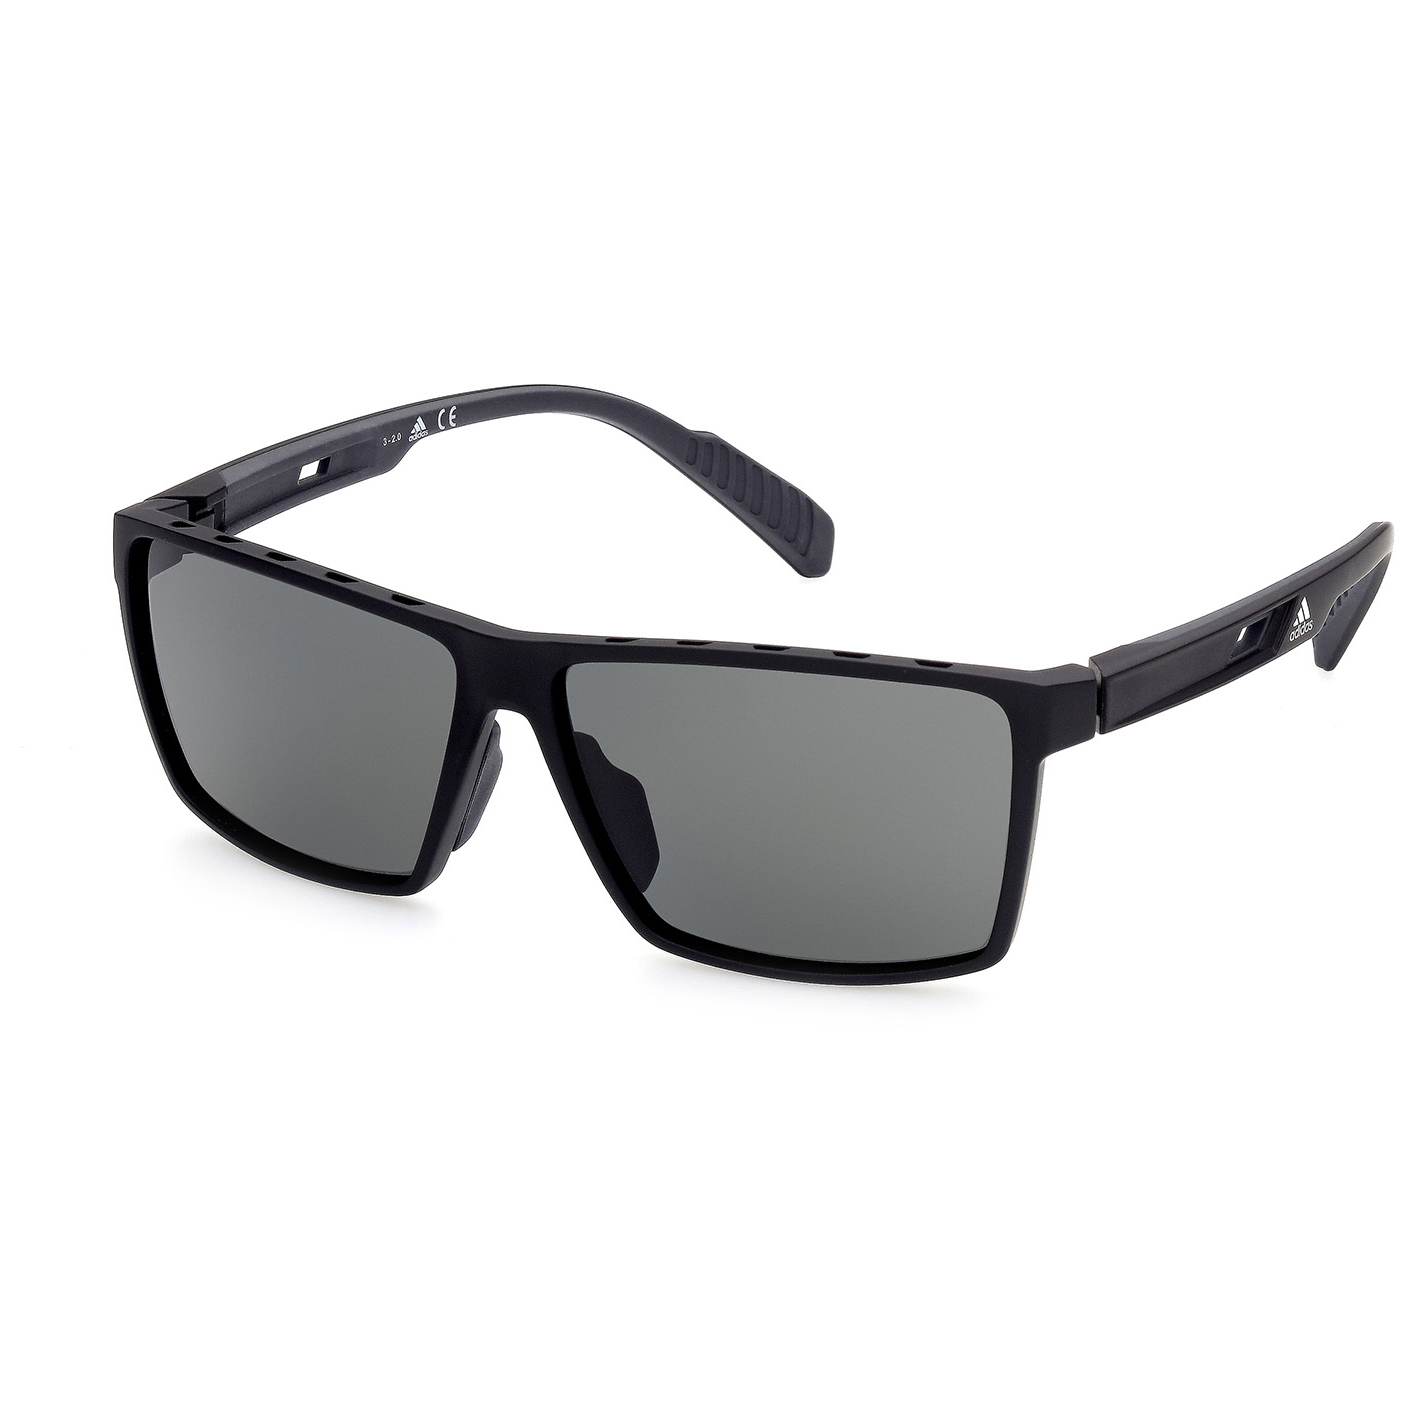 Солнцезащитные очки Adidas SP0034 Polarized Cat 3, матовый черный очки солнцезащитные stylemark polarized l2480d